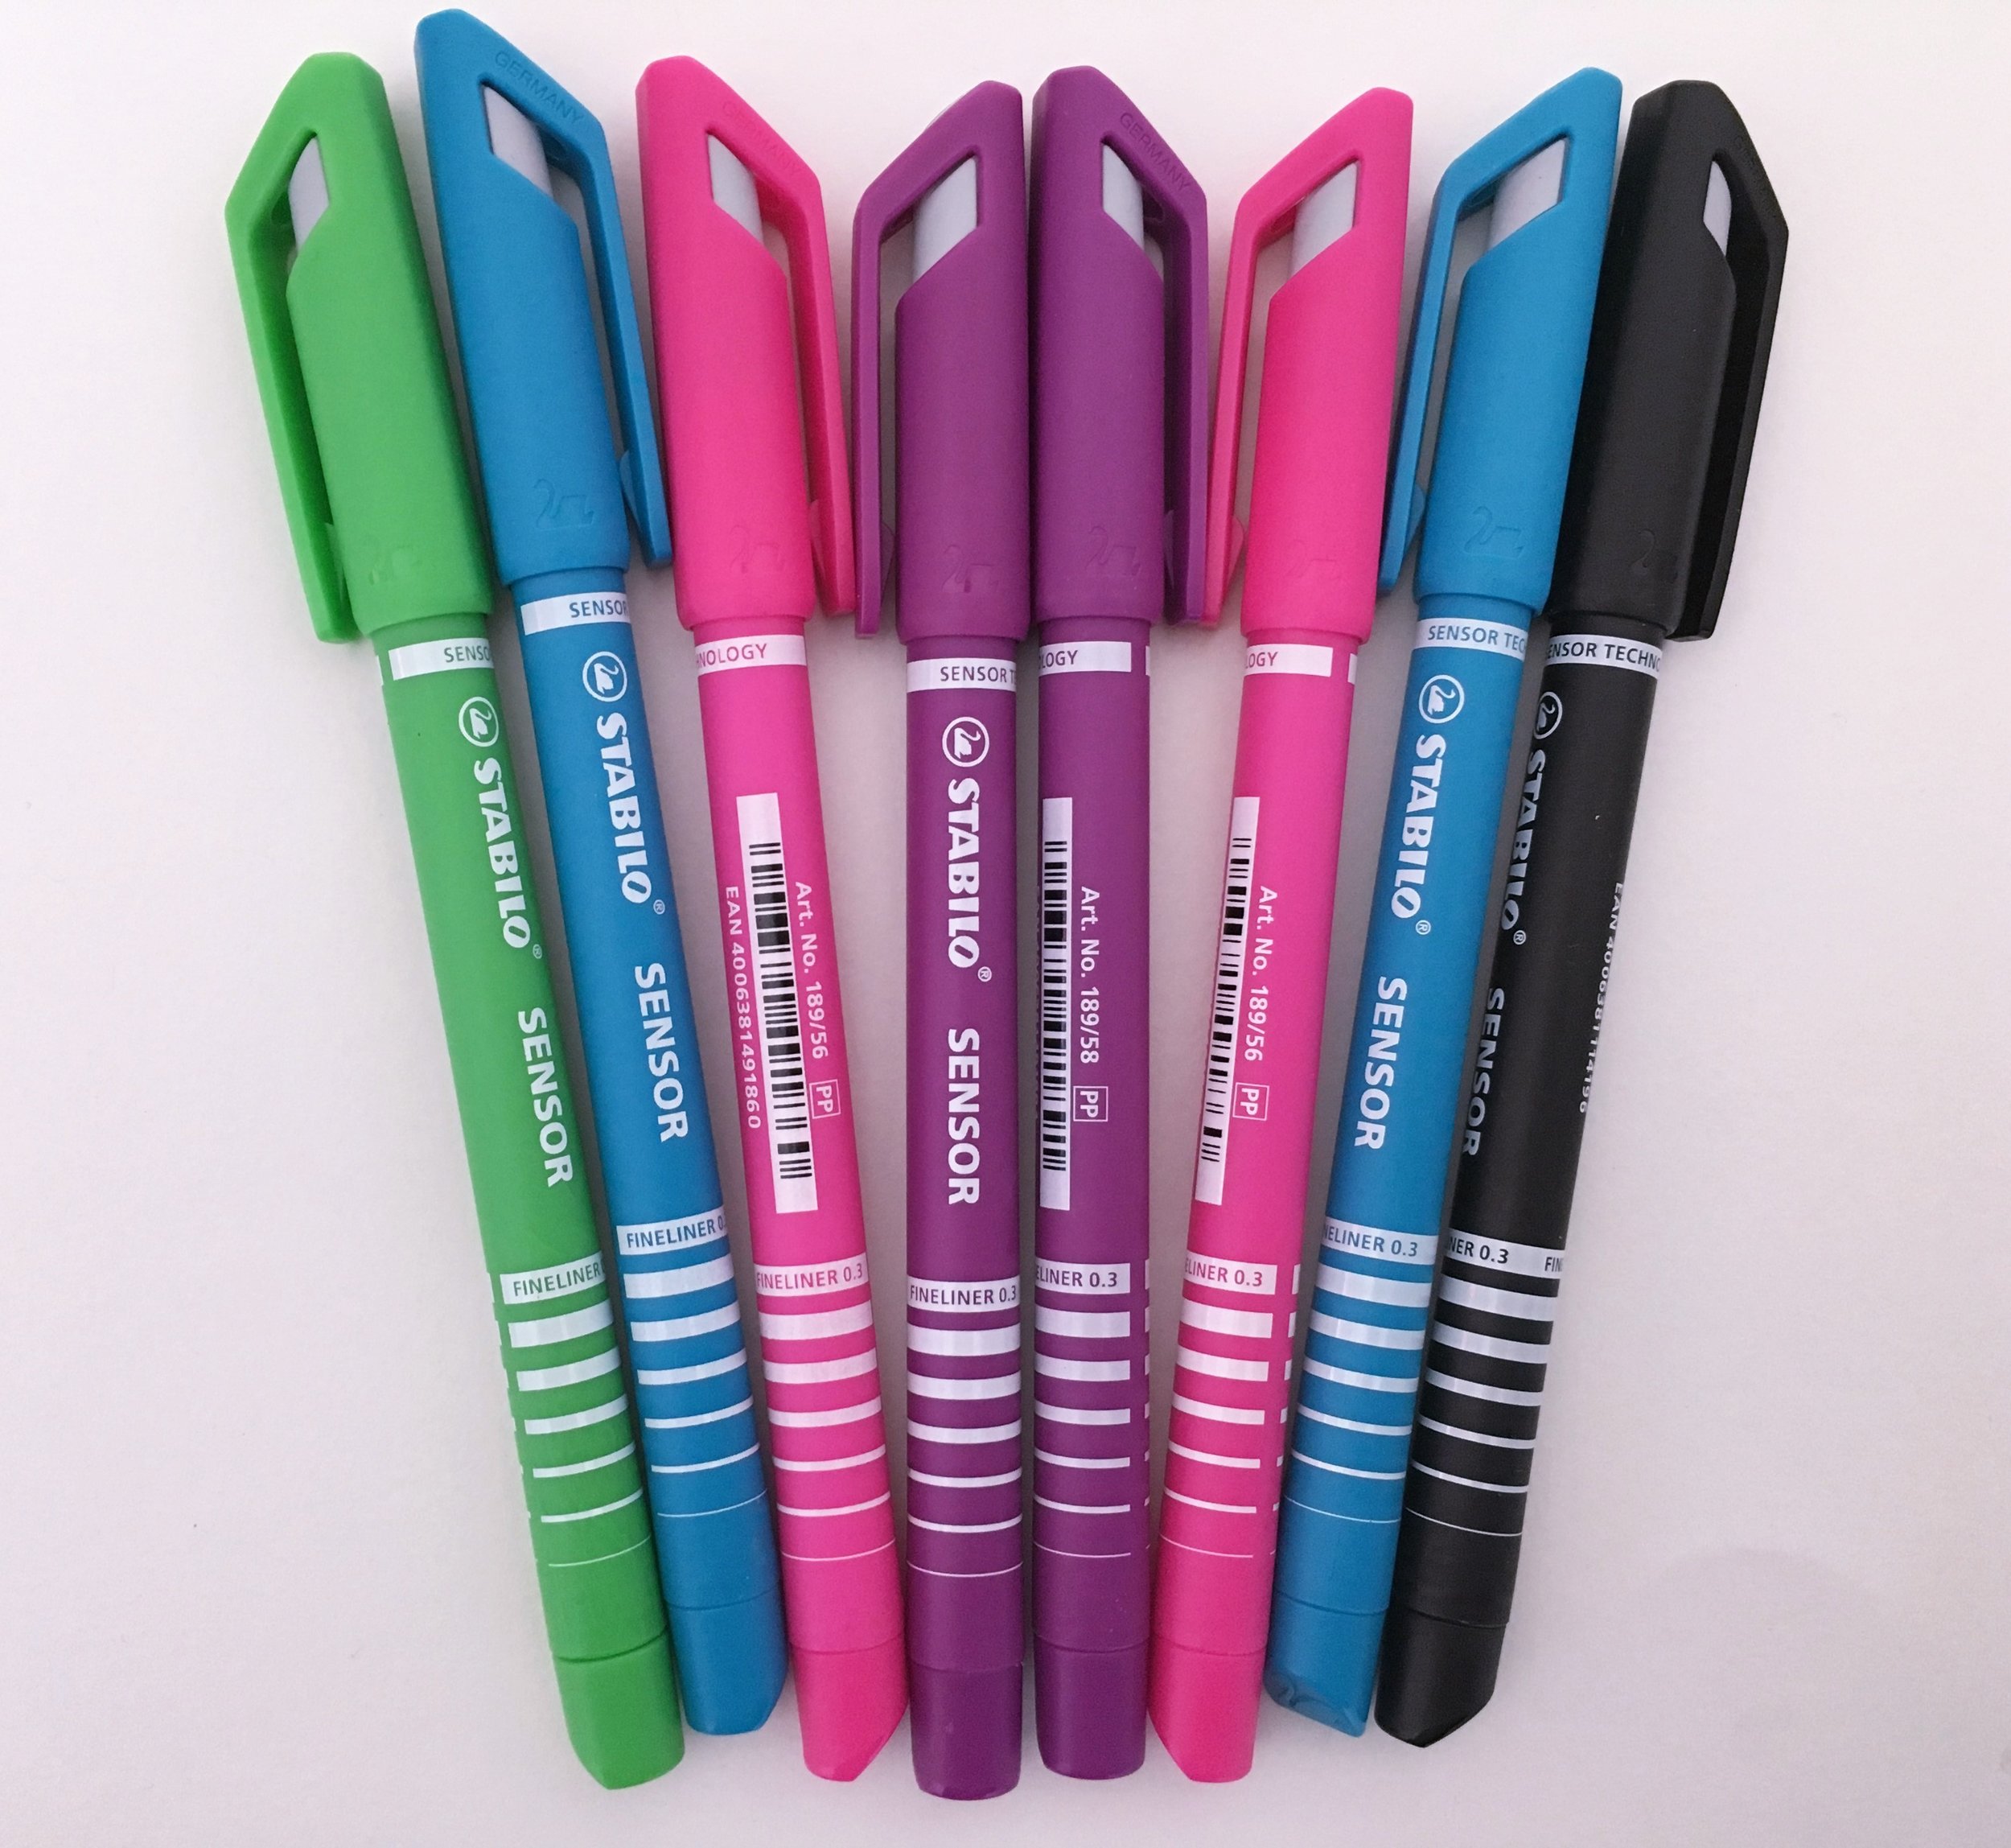 Ontmoedigd zijn Waakzaam woede Stabilo Sensor Fineliner Marker Pen Review — The Pen Addict